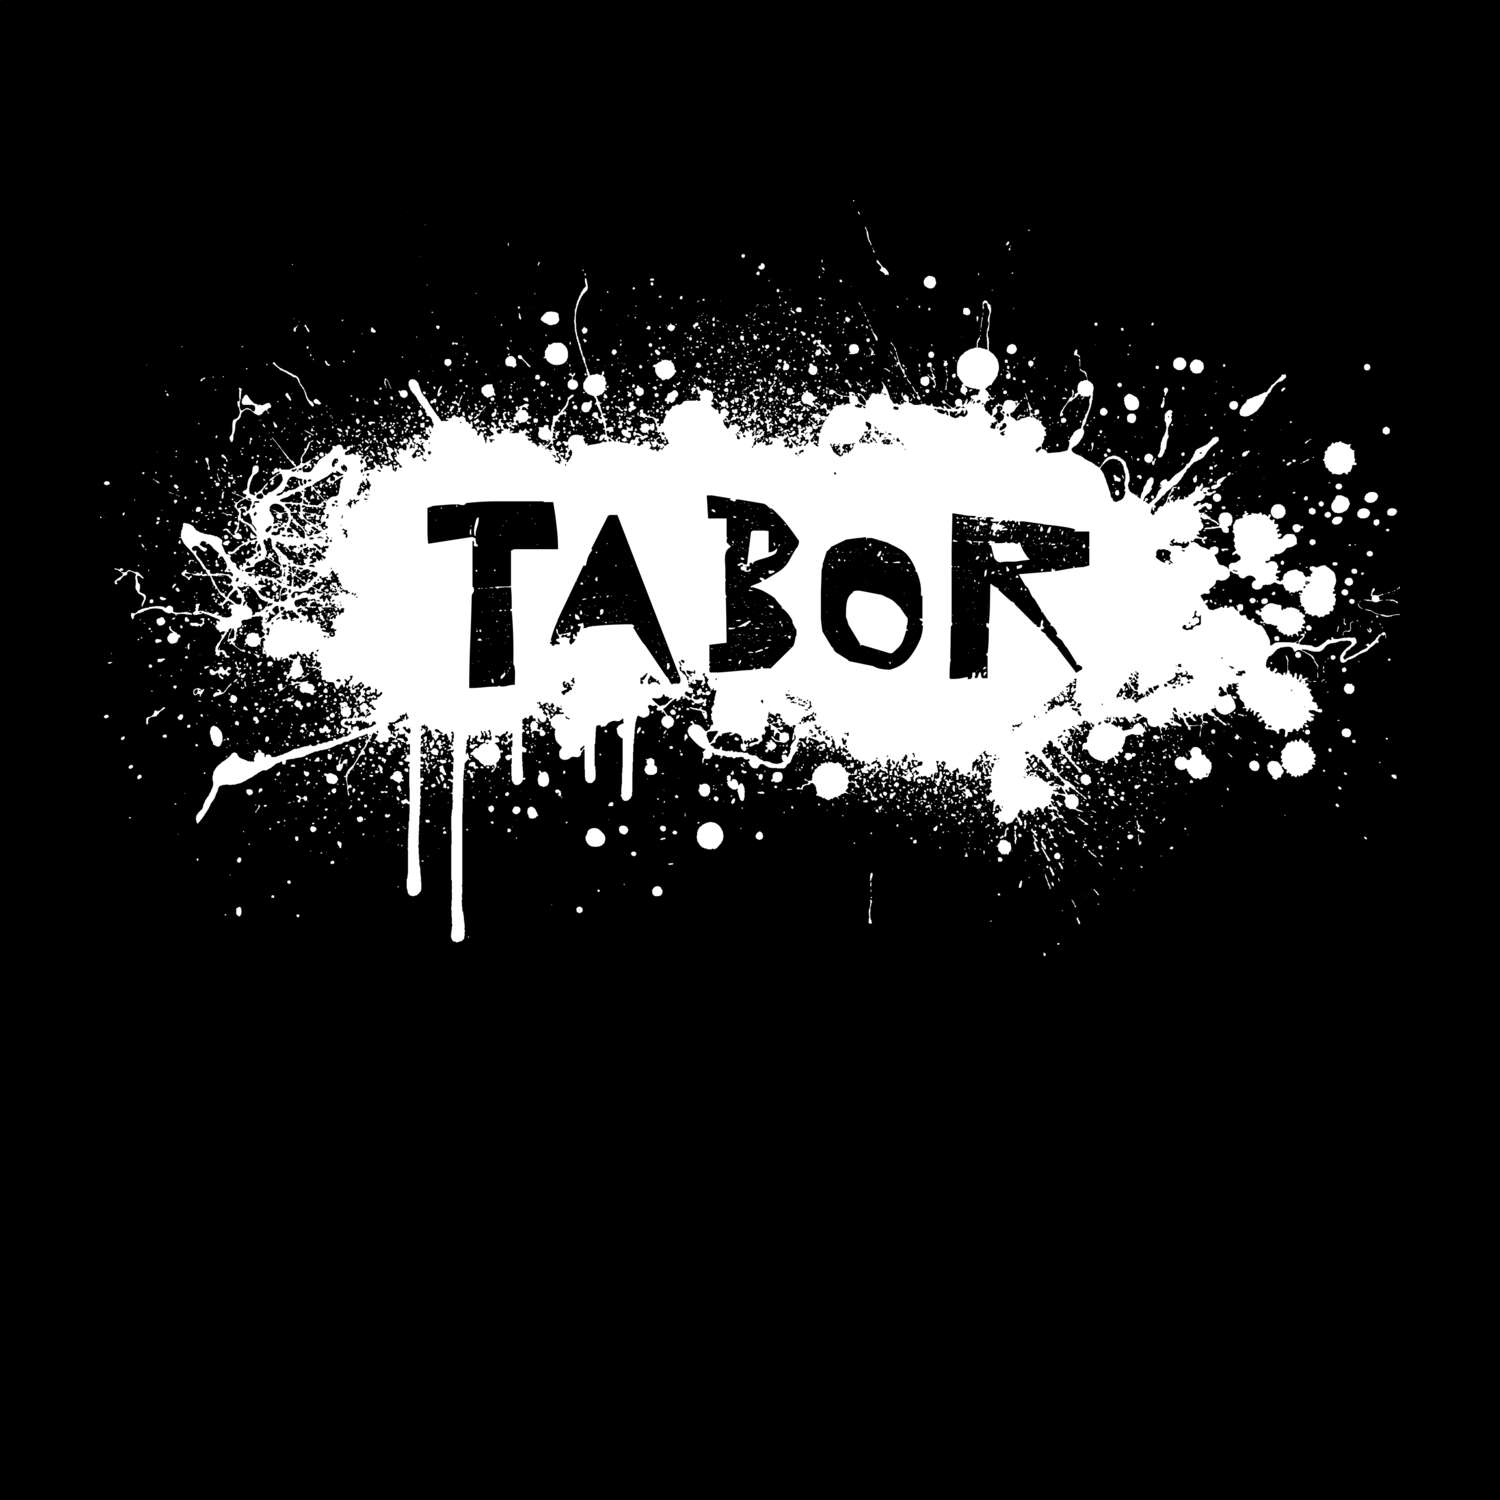 Tabor T-Shirt »Paint Splash Punk«